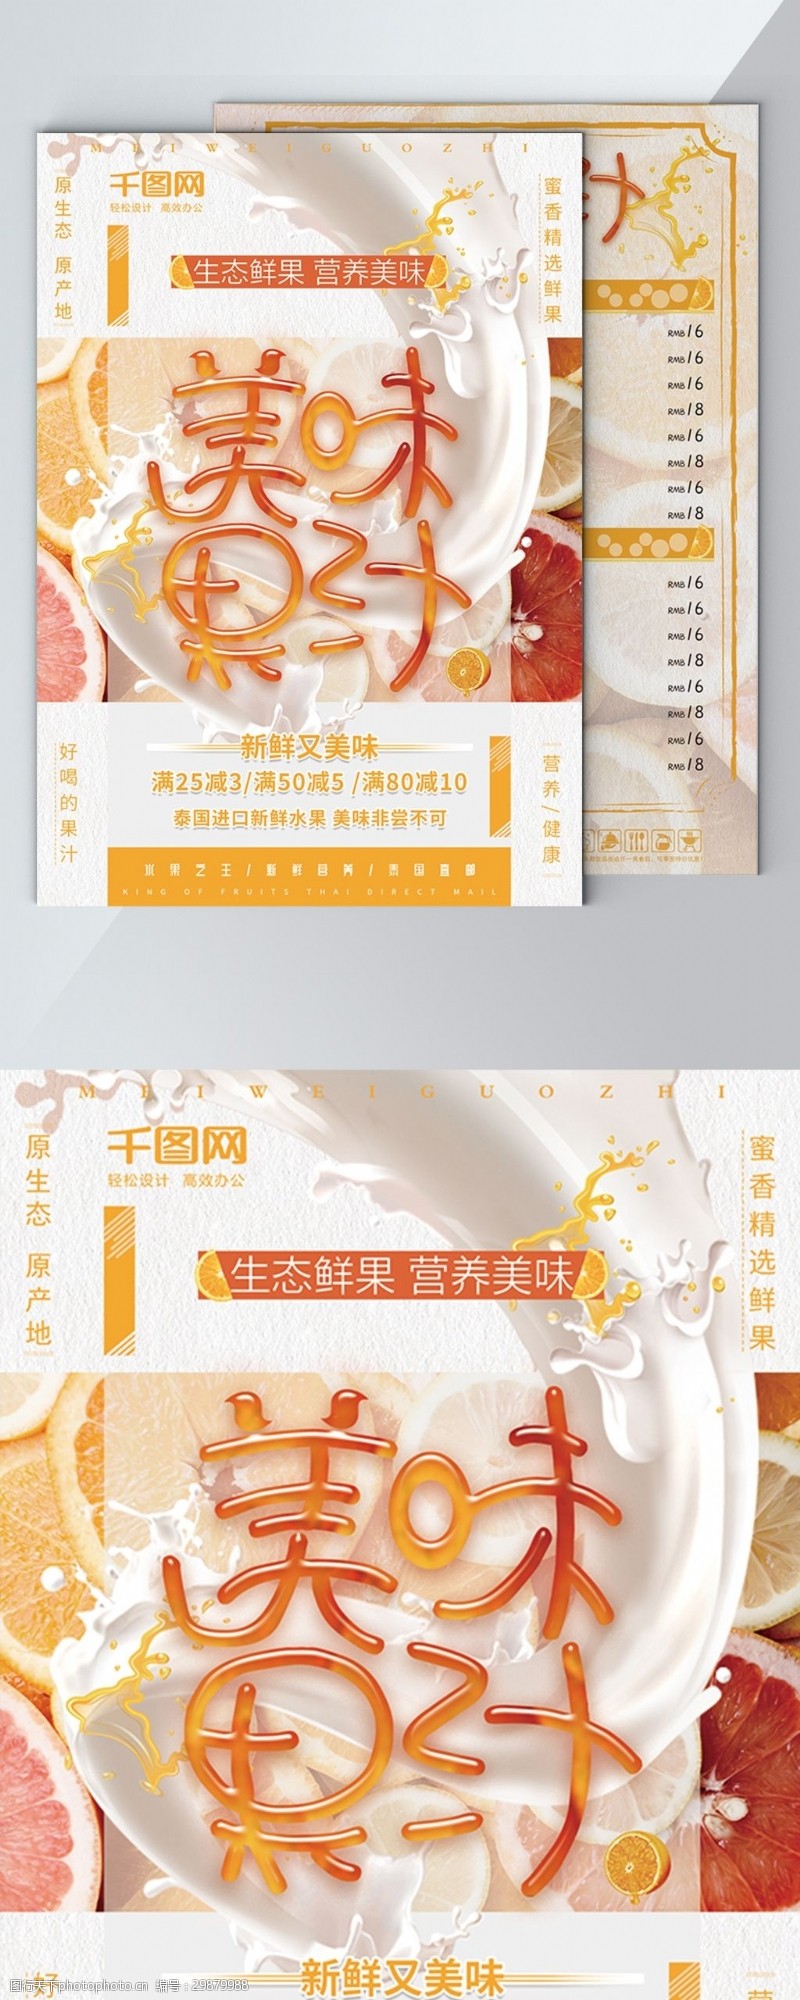 鲜榨果汁清新美味果汁饮品餐饮促销DM宣传单